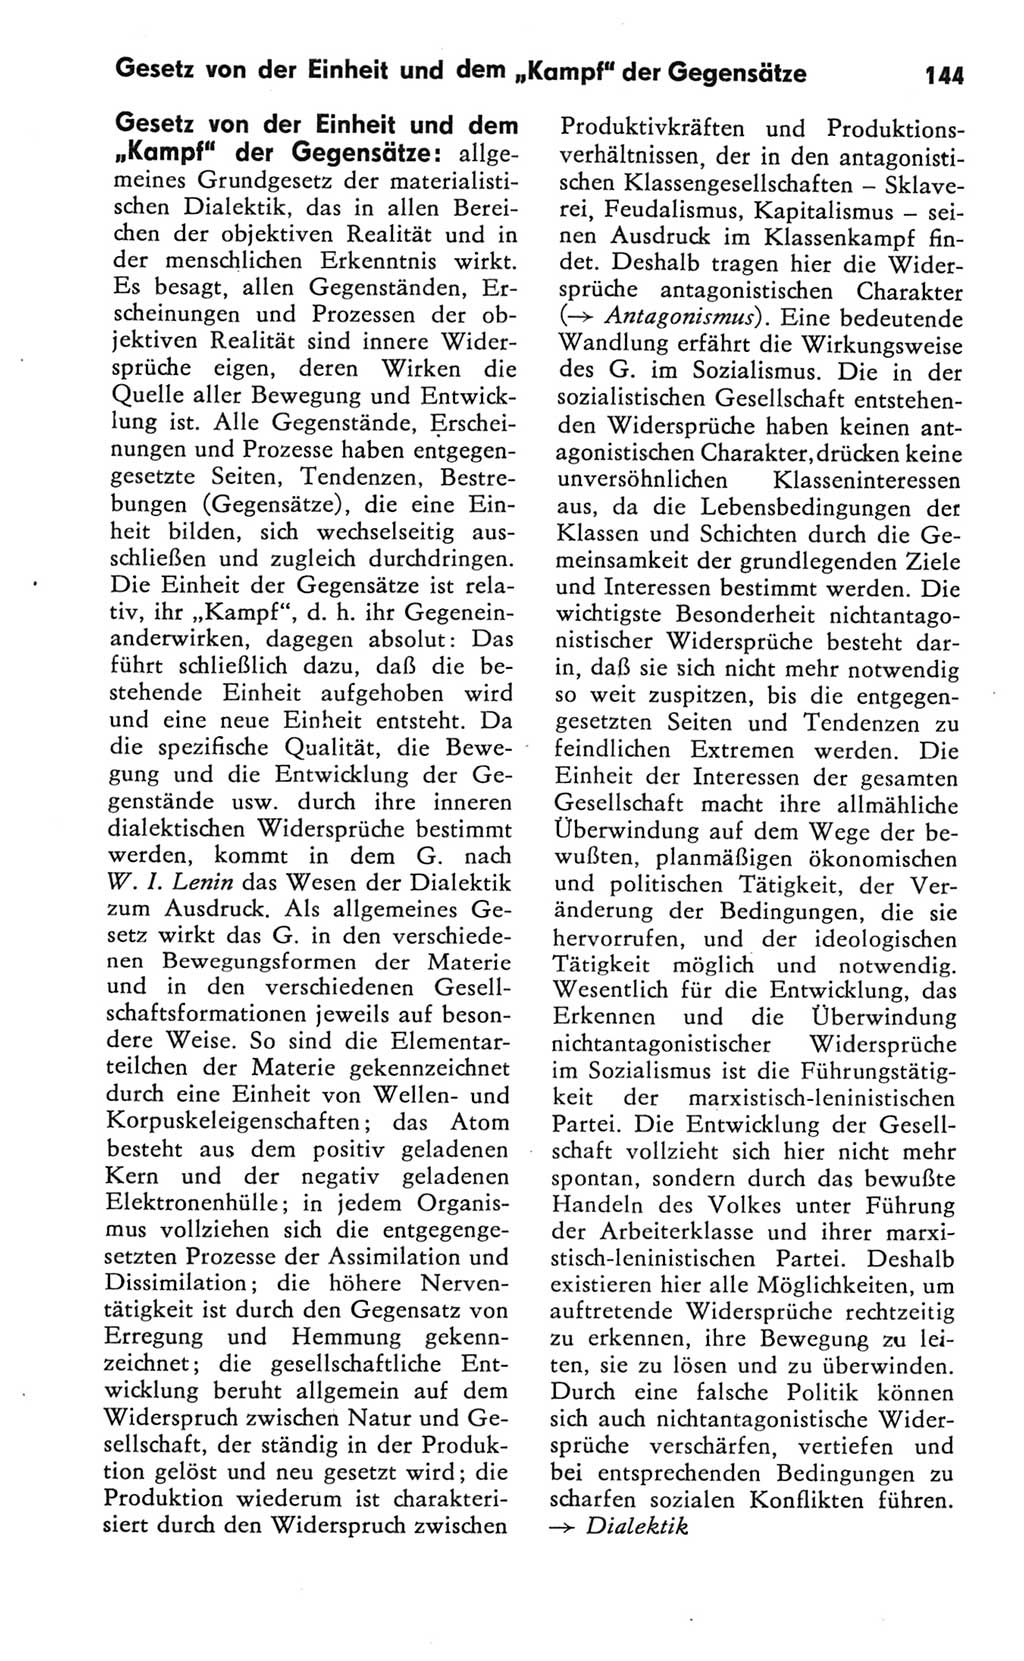 Kleines Wörterbuch der marxistisch-leninistischen Philosophie [Deutsche Demokratische Republik (DDR)] 1981, Seite 144 (Kl. Wb. ML Phil. DDR 1981, S. 144)